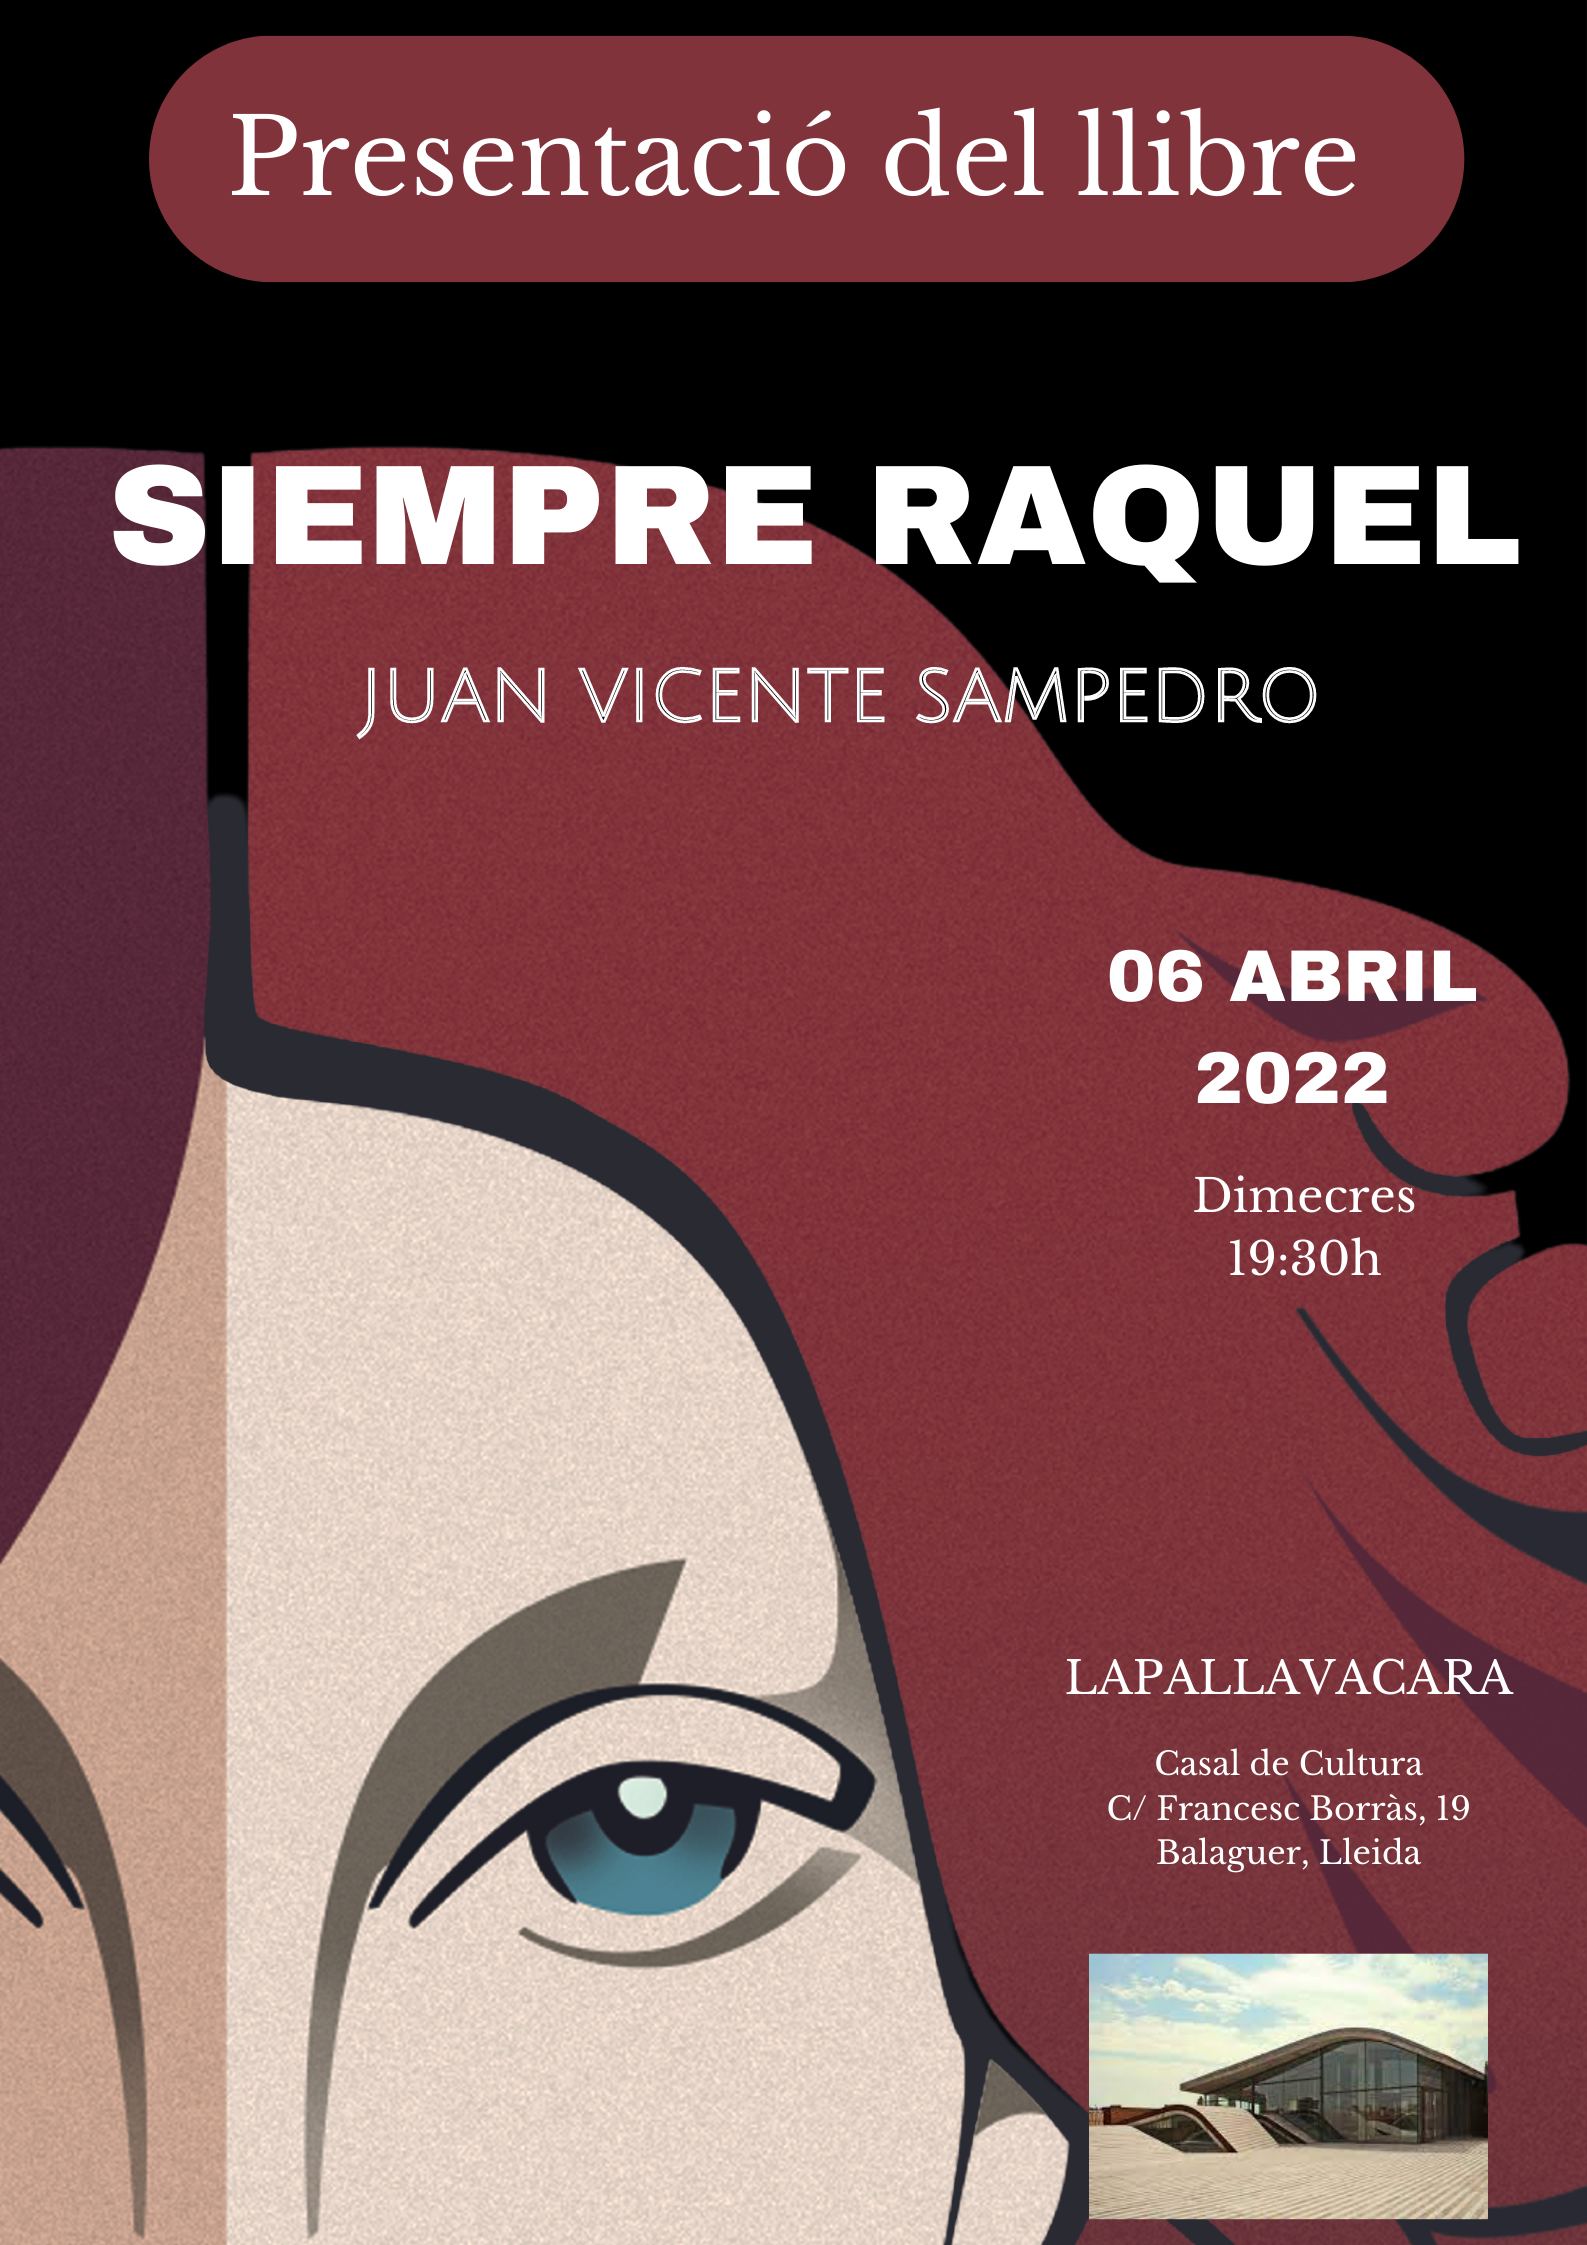 Presentación de la novela Siempre Raquel de Juan VIcente Sampedro en Lleida y Balaguer